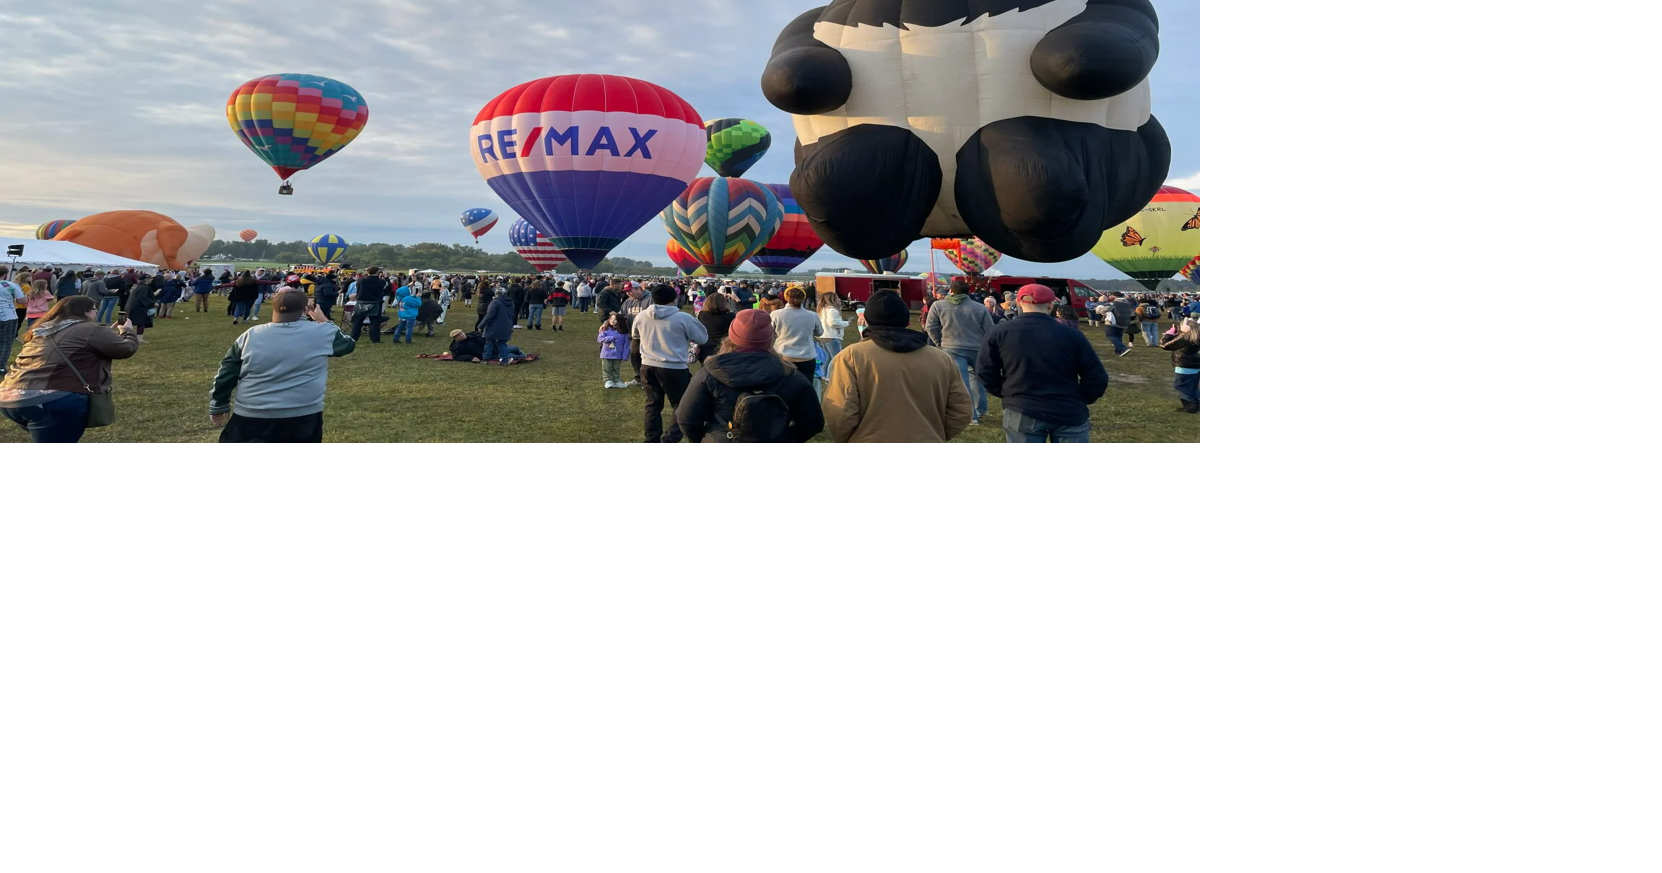 Adirondack Balloon Festival takes off New Balloon ENB